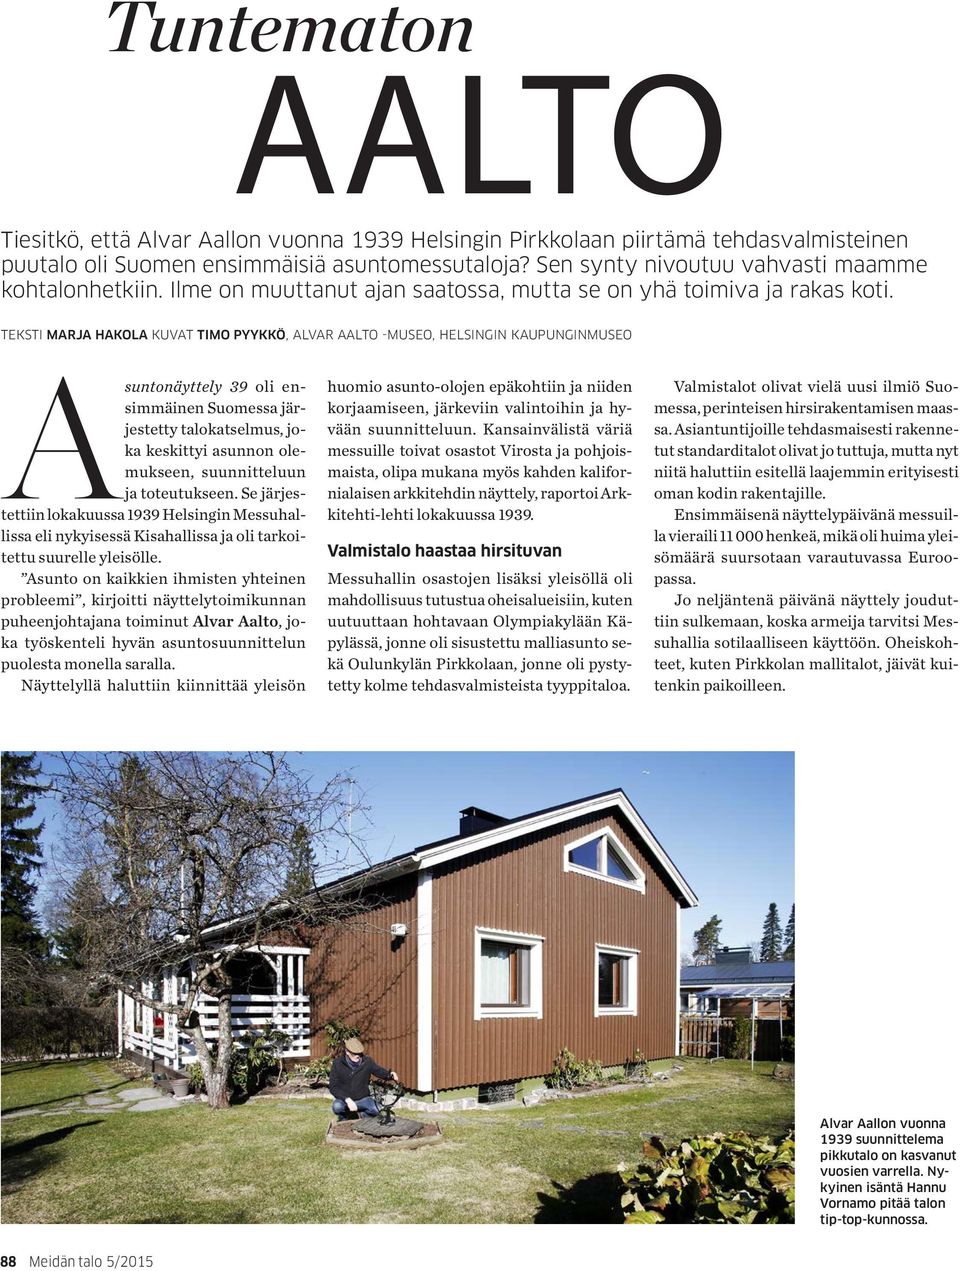 TEKSTI MARJA HAKOLA KUVAT TIMO PYYKKÖ, ALVAR AALTO -MUSEO, HELSINGIN KAUPUNGINMUSEO Asuntonäyttely 39 oli ensimmäinen Suomessa järjestetty talokatselmus, joka keskittyi asunnon olemukseen,